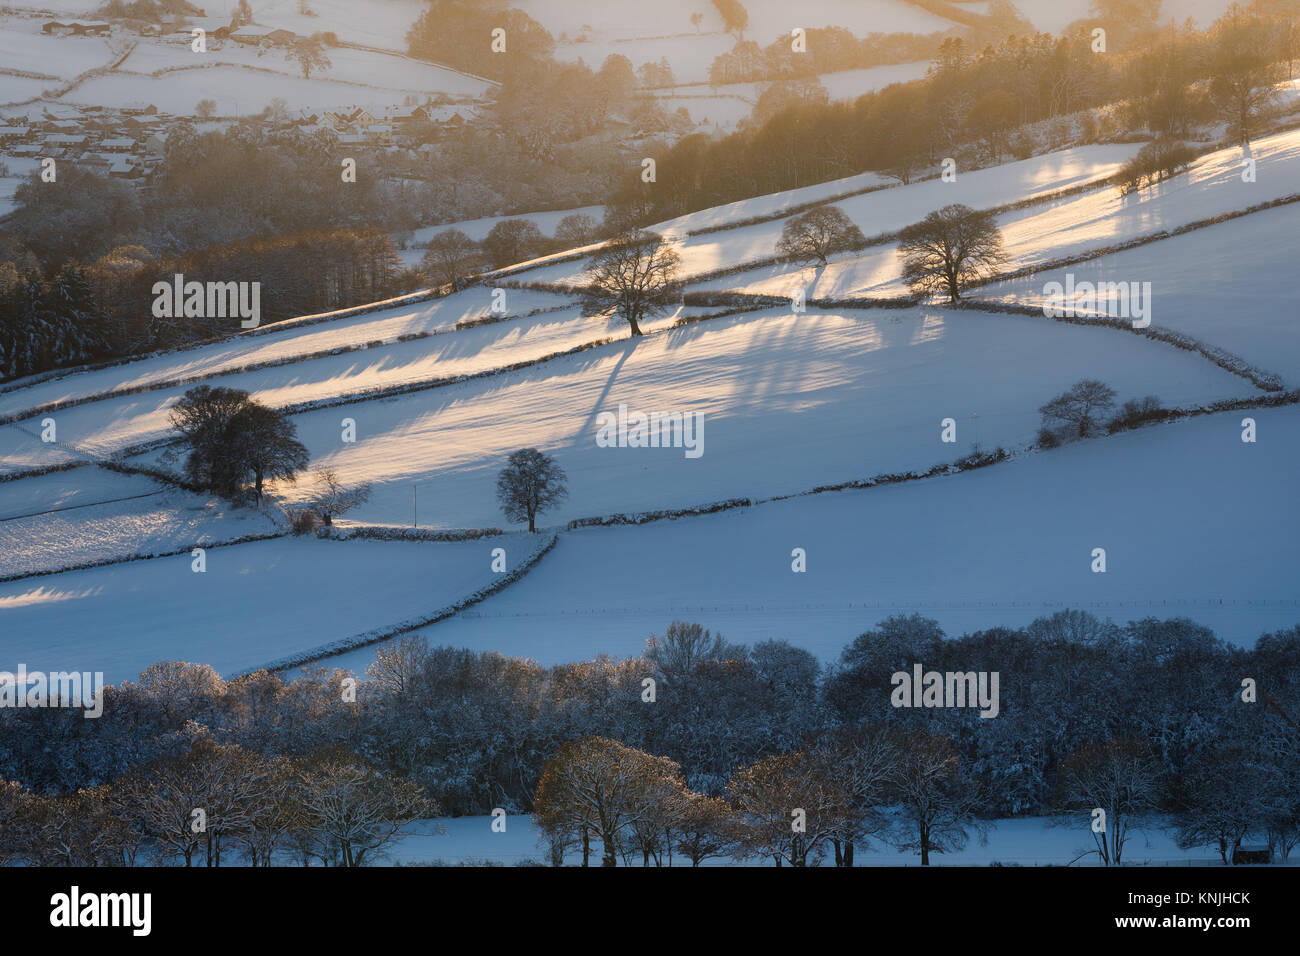 Paxton's Tower. Regno Unito. 11 dicembre, 2017. Guardando attraverso una coperta di neve landsape al tramonto, alberi nudo gettando ombre su campi. Parco Nazionale di Brecon Beacons, Galles. Credito: Drew Buckley/Alamy Live News Foto Stock